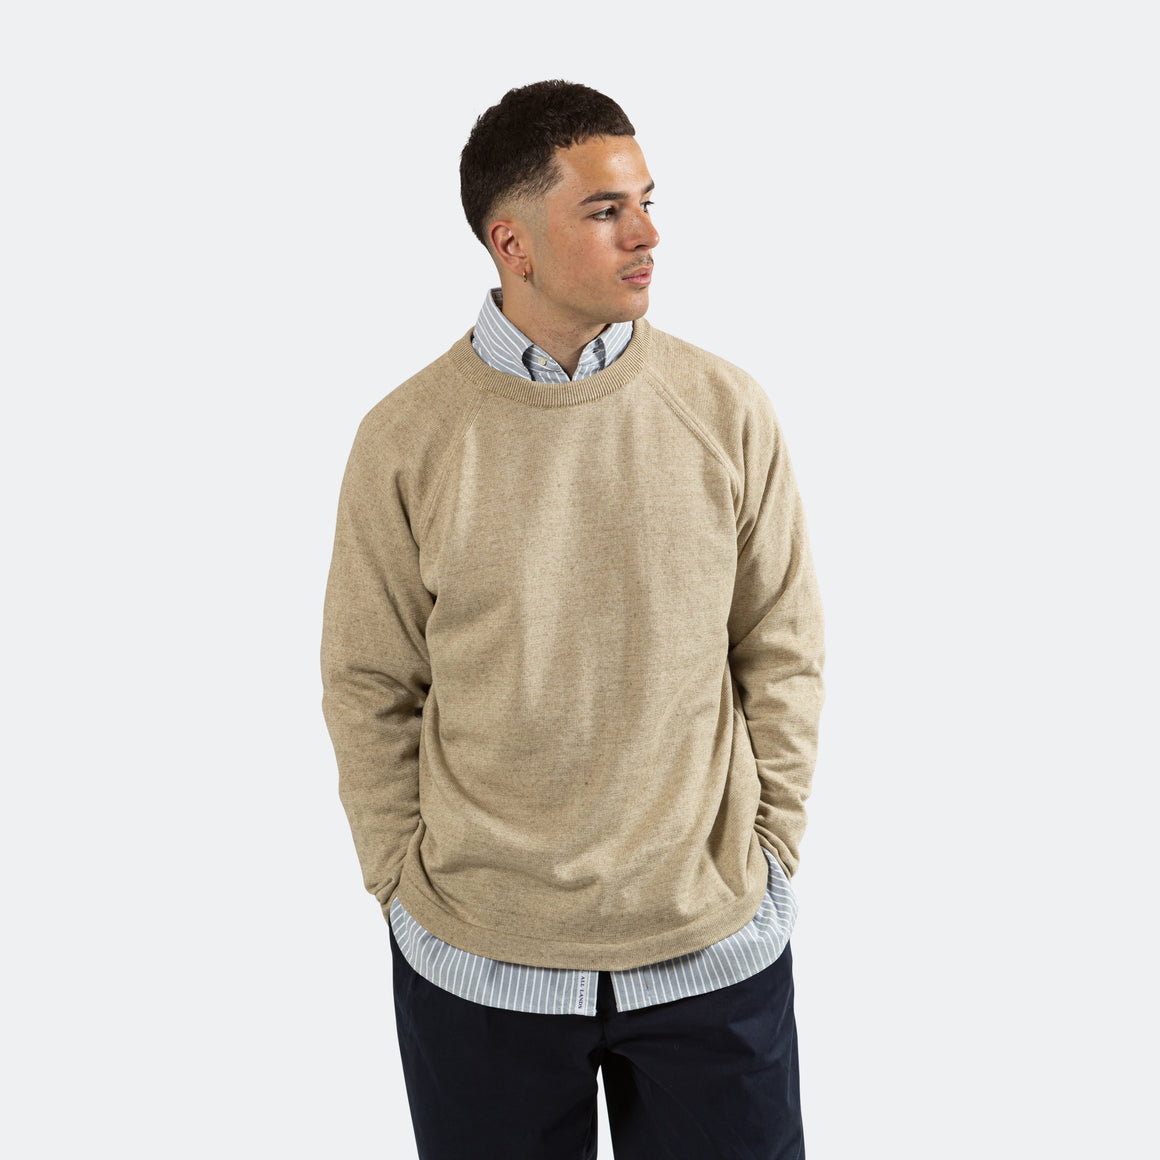 Cotton Cashmere Sweater - Beige